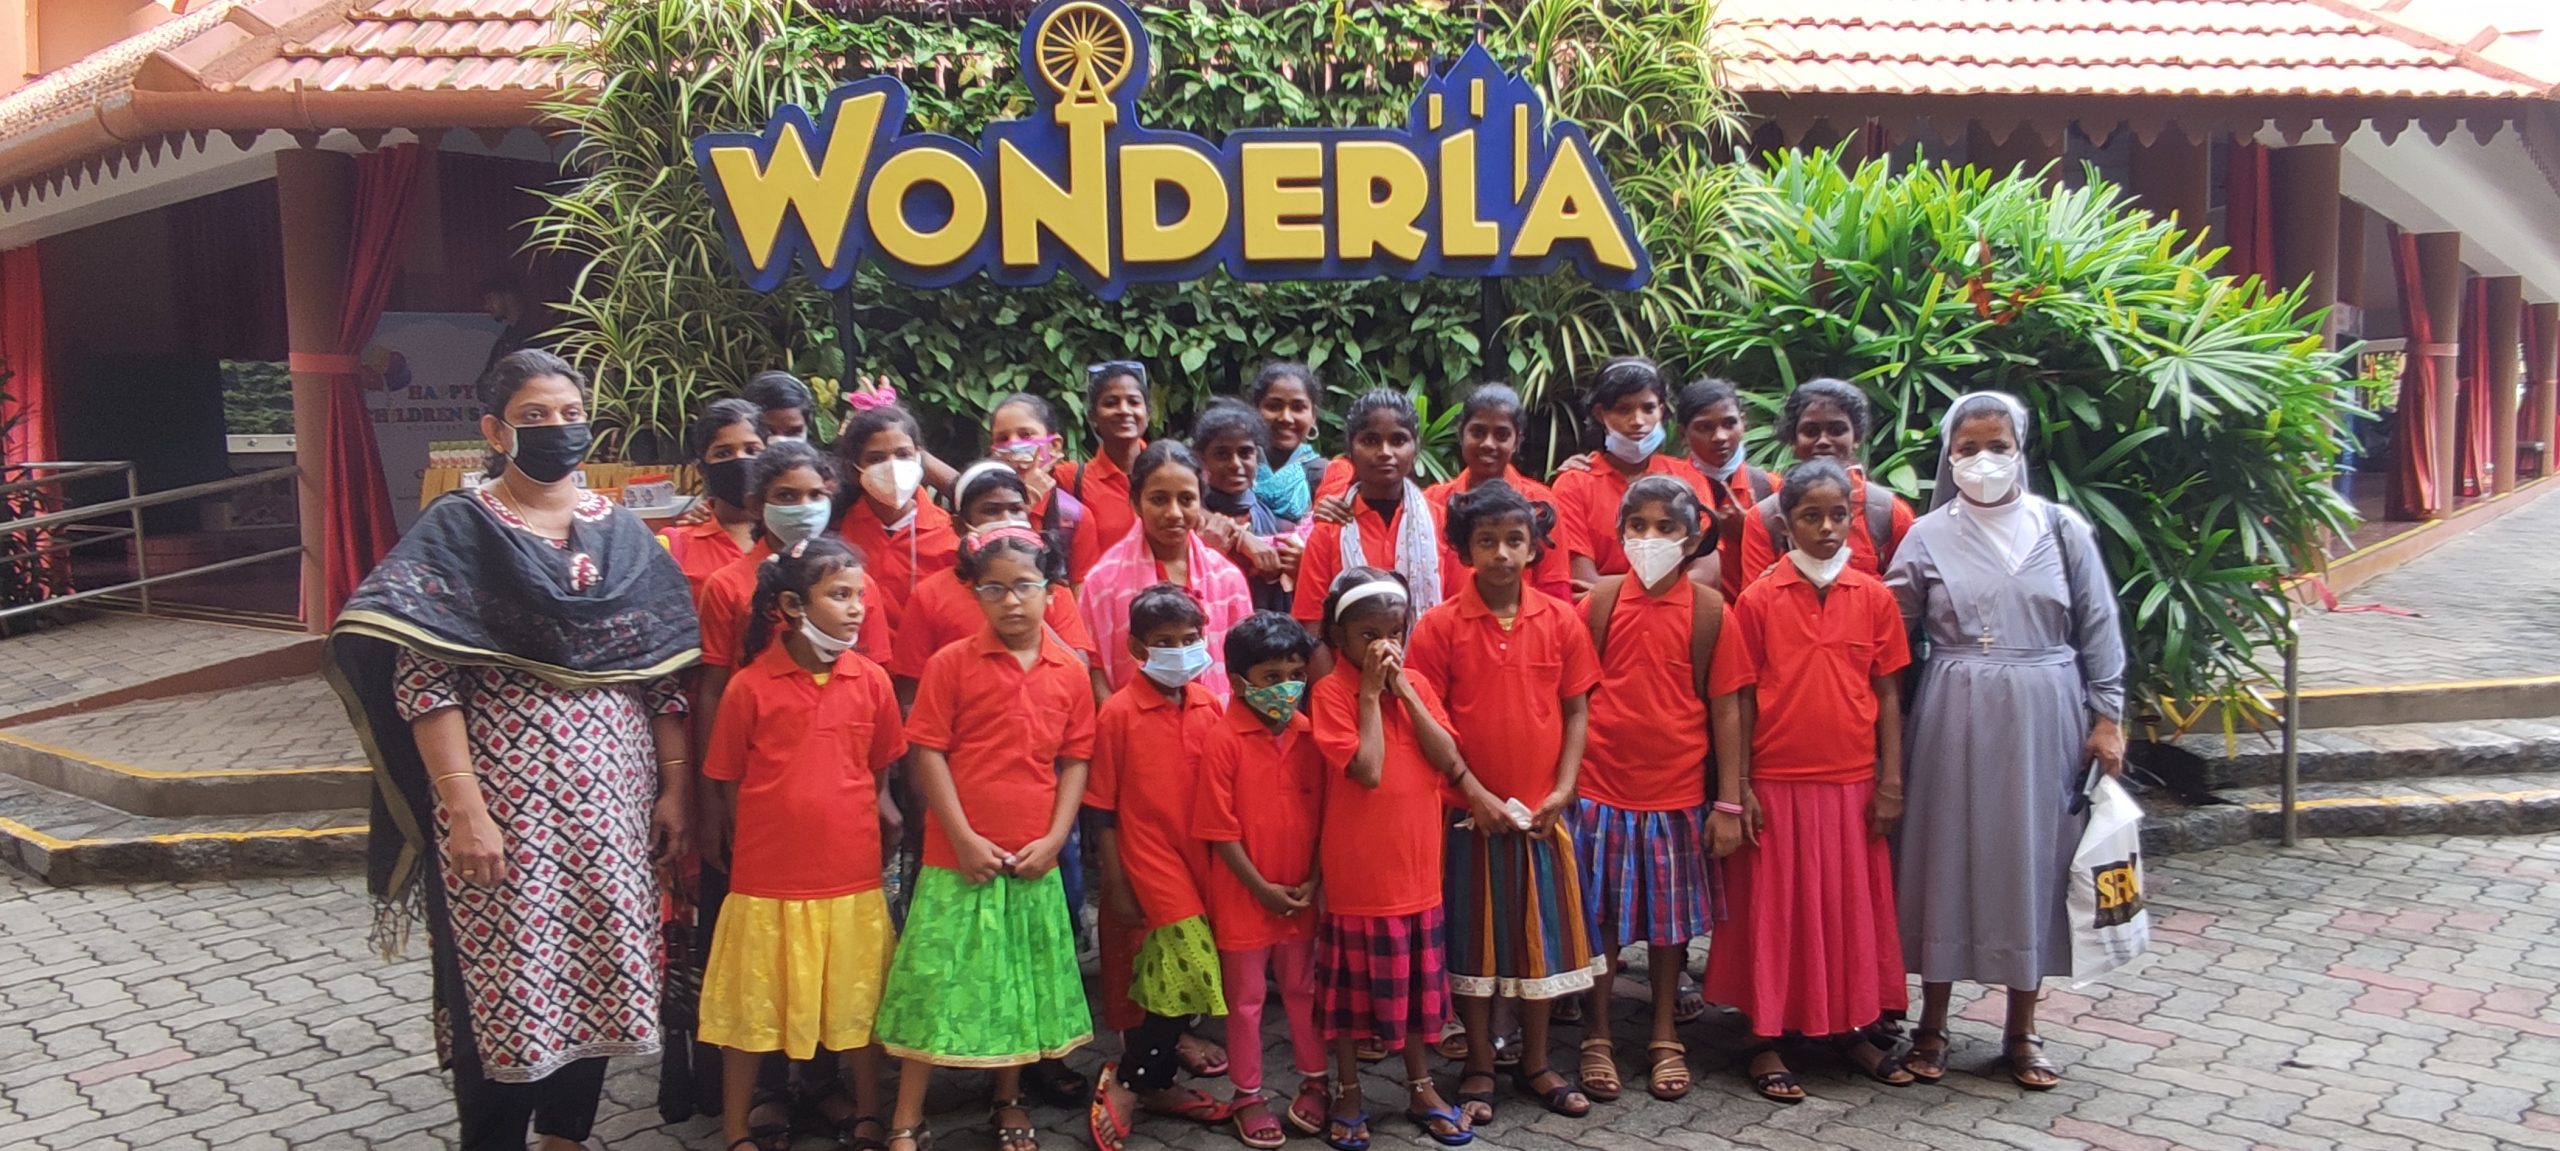 Wonderla celebrated Children’s Day by giving 600 free tickets to underprivileged children ...